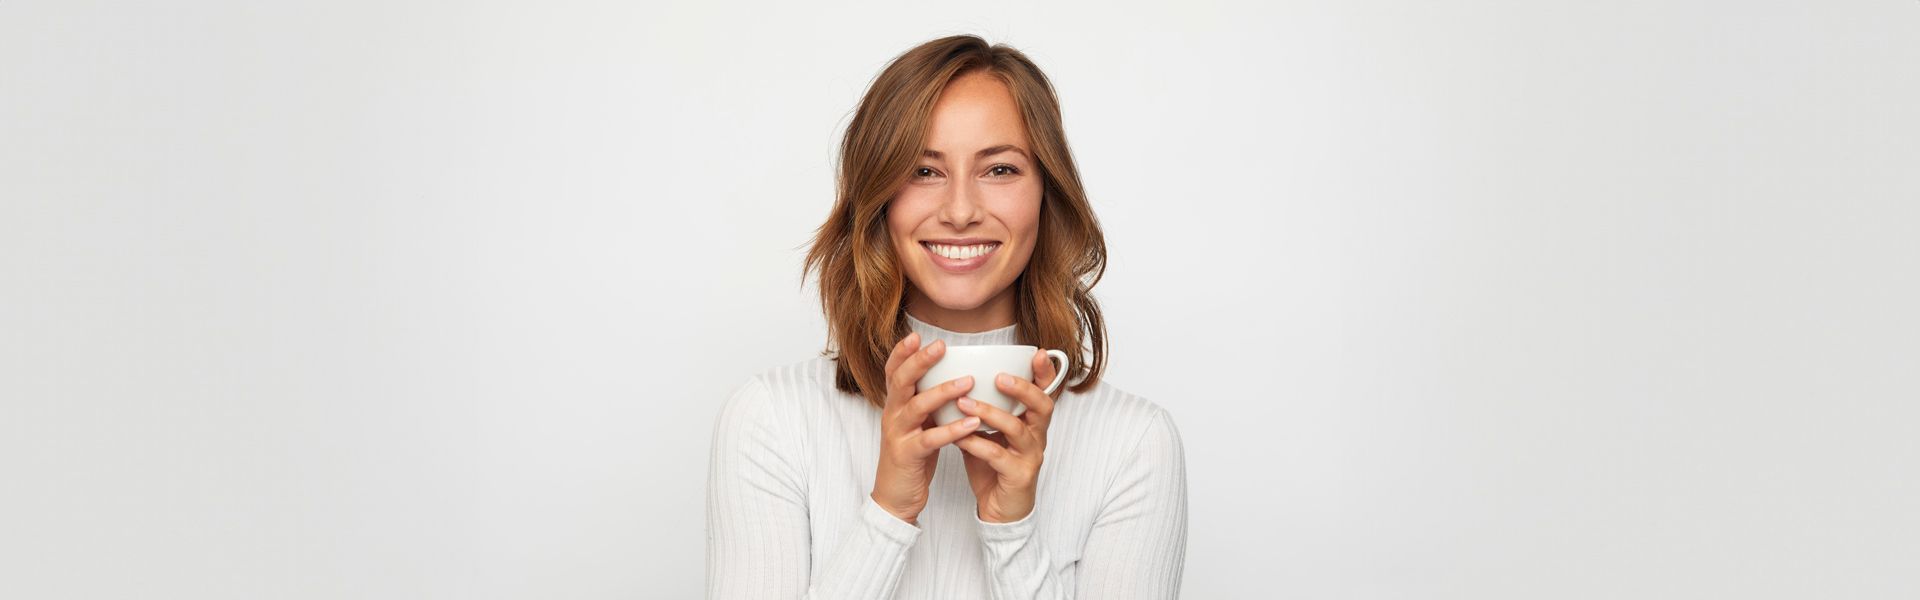 Eine Frau hält eine Tasse Kaffee in ihren Händen und lächelt | Zahnmedizin am Neckar